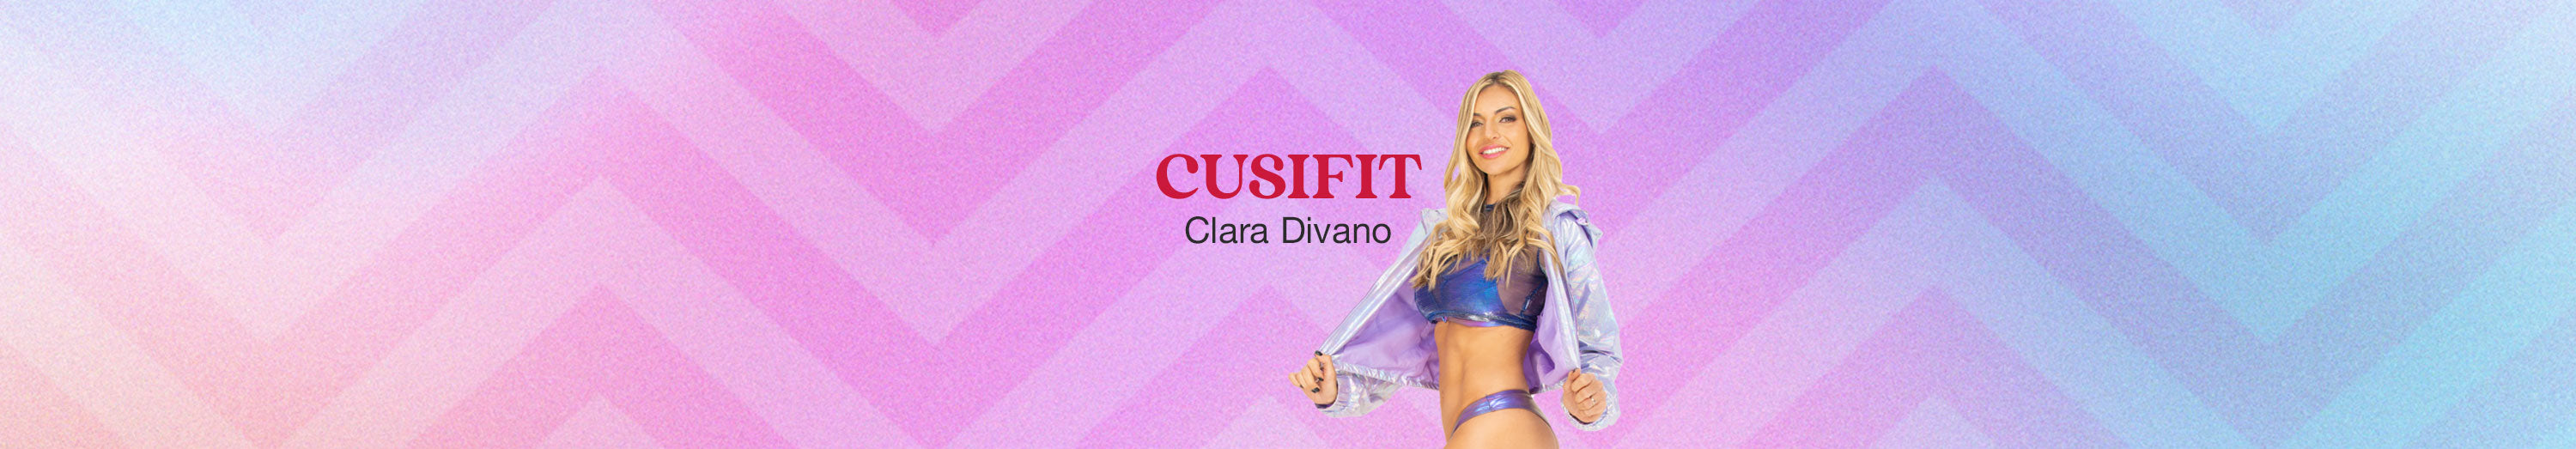 @Cusifit - Clara Divano